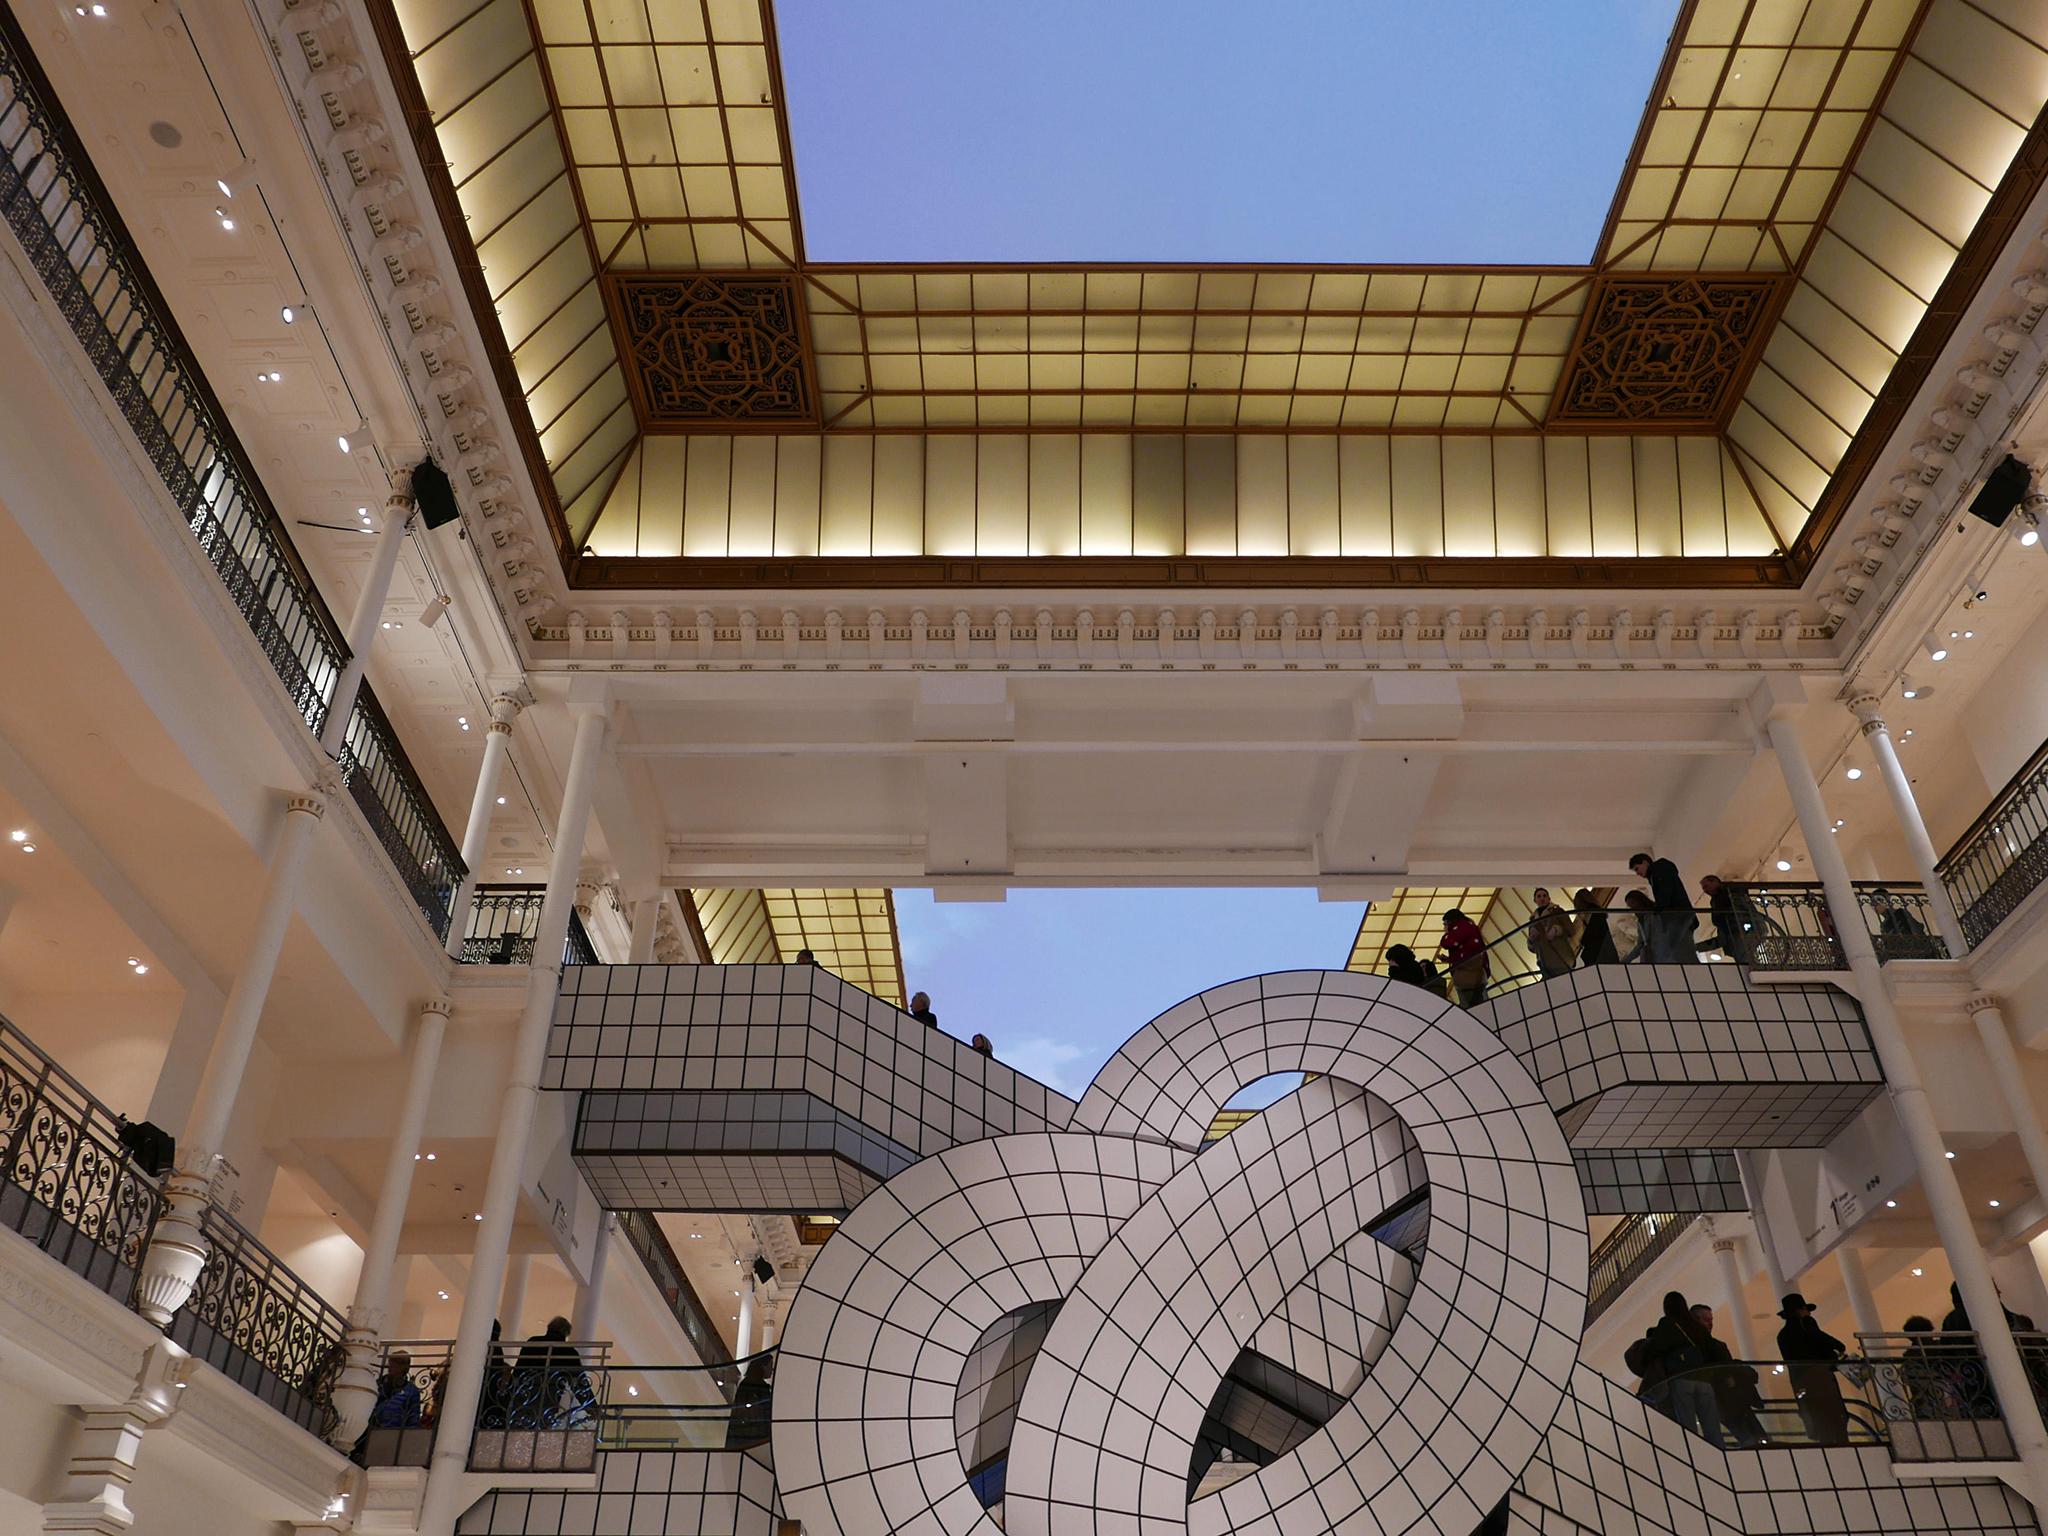 Escalators designed by Andrée Putman in Paris’s Rive Gauche department store